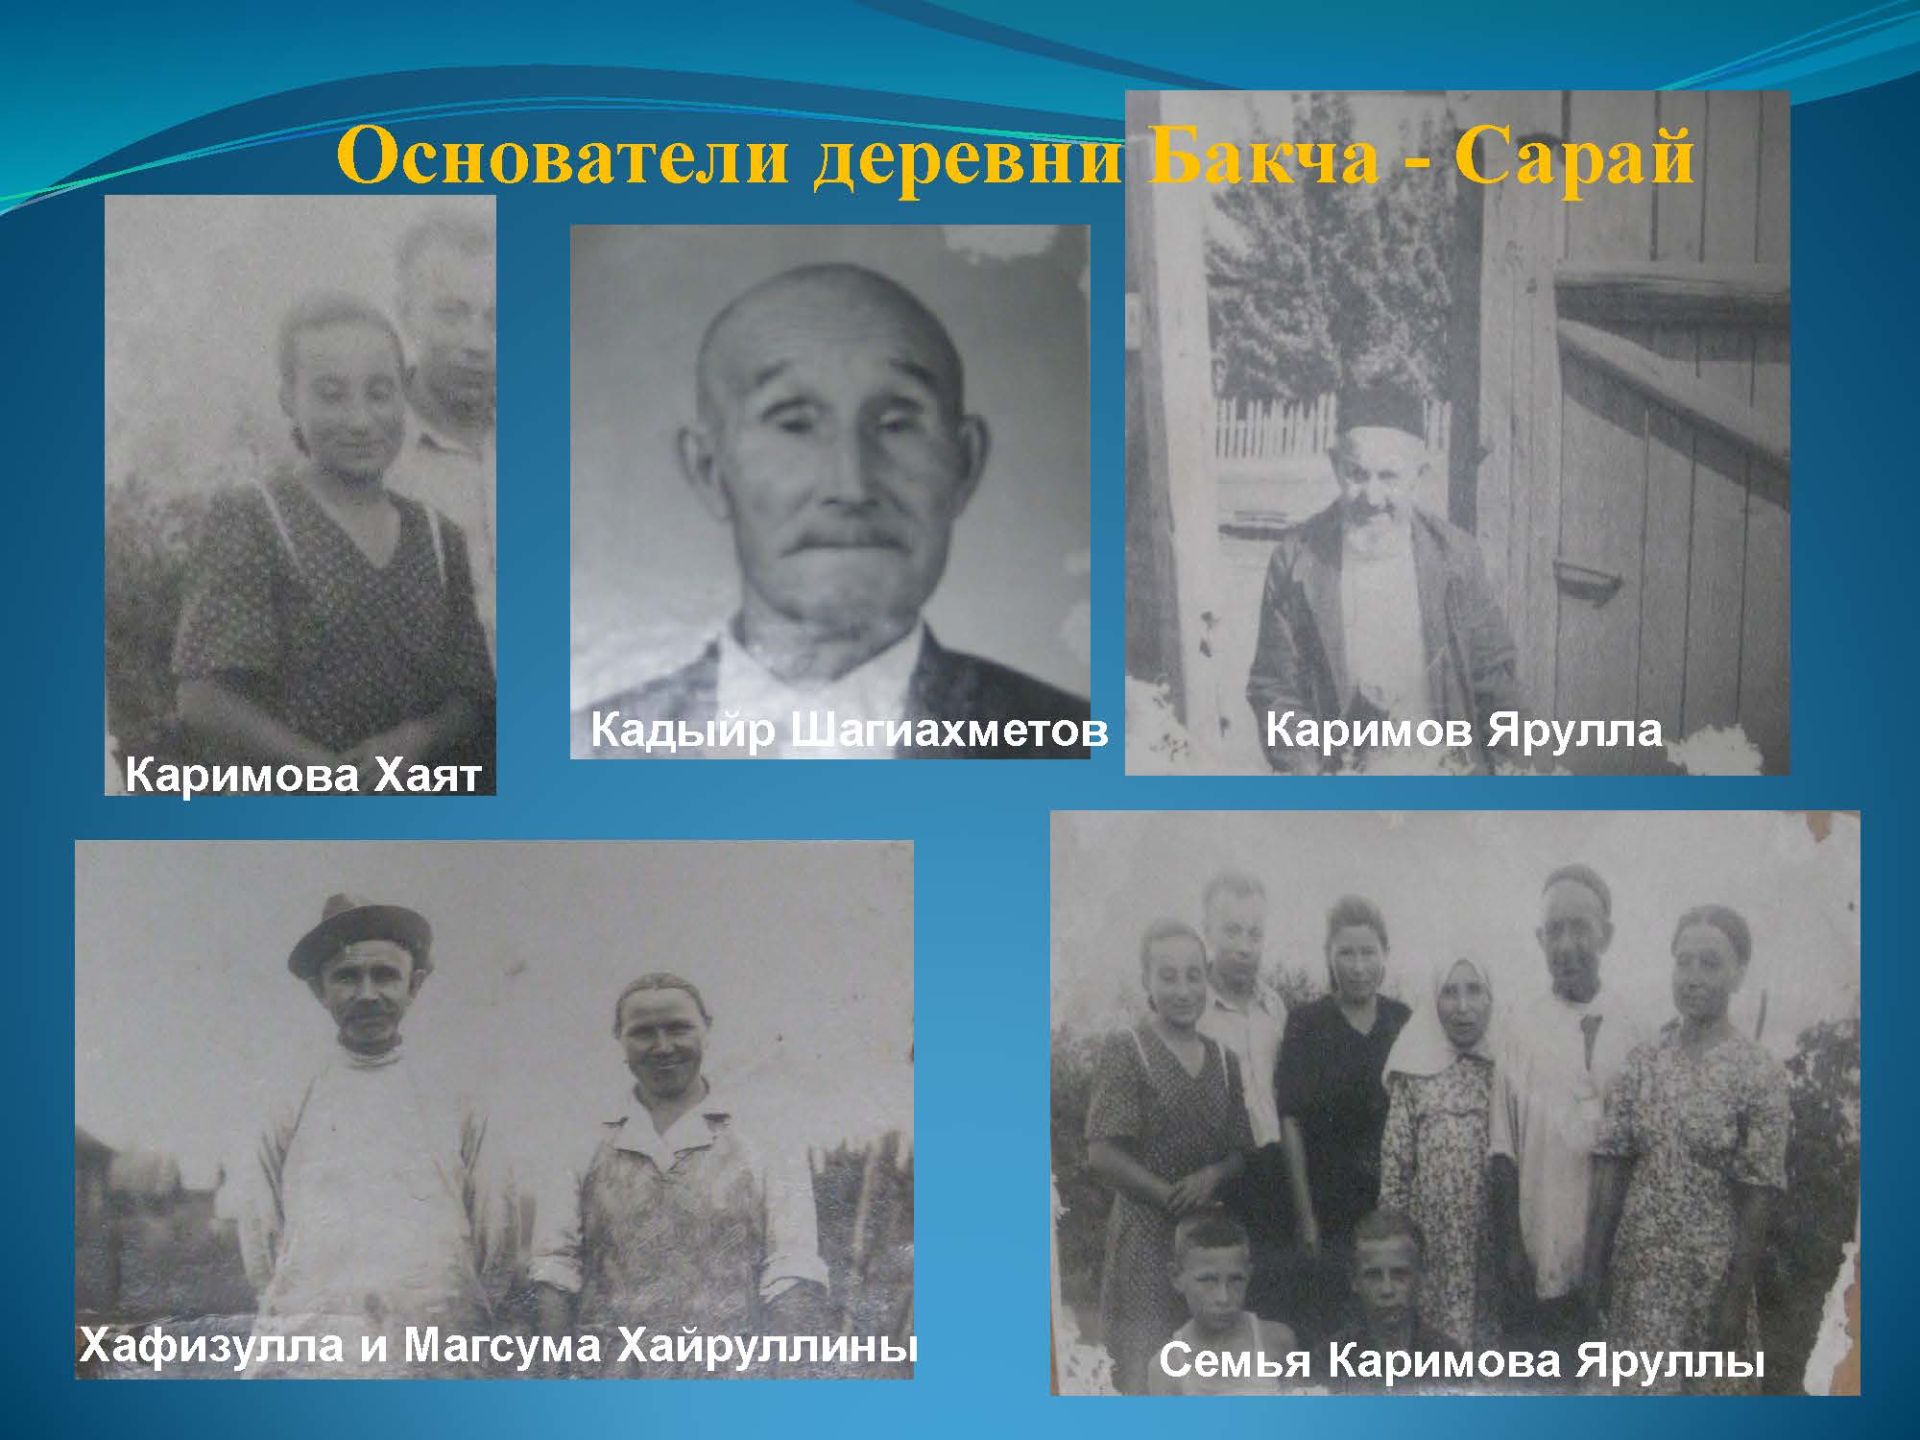 К 100-летию ТАССР: история образования поселка Бахчисарай